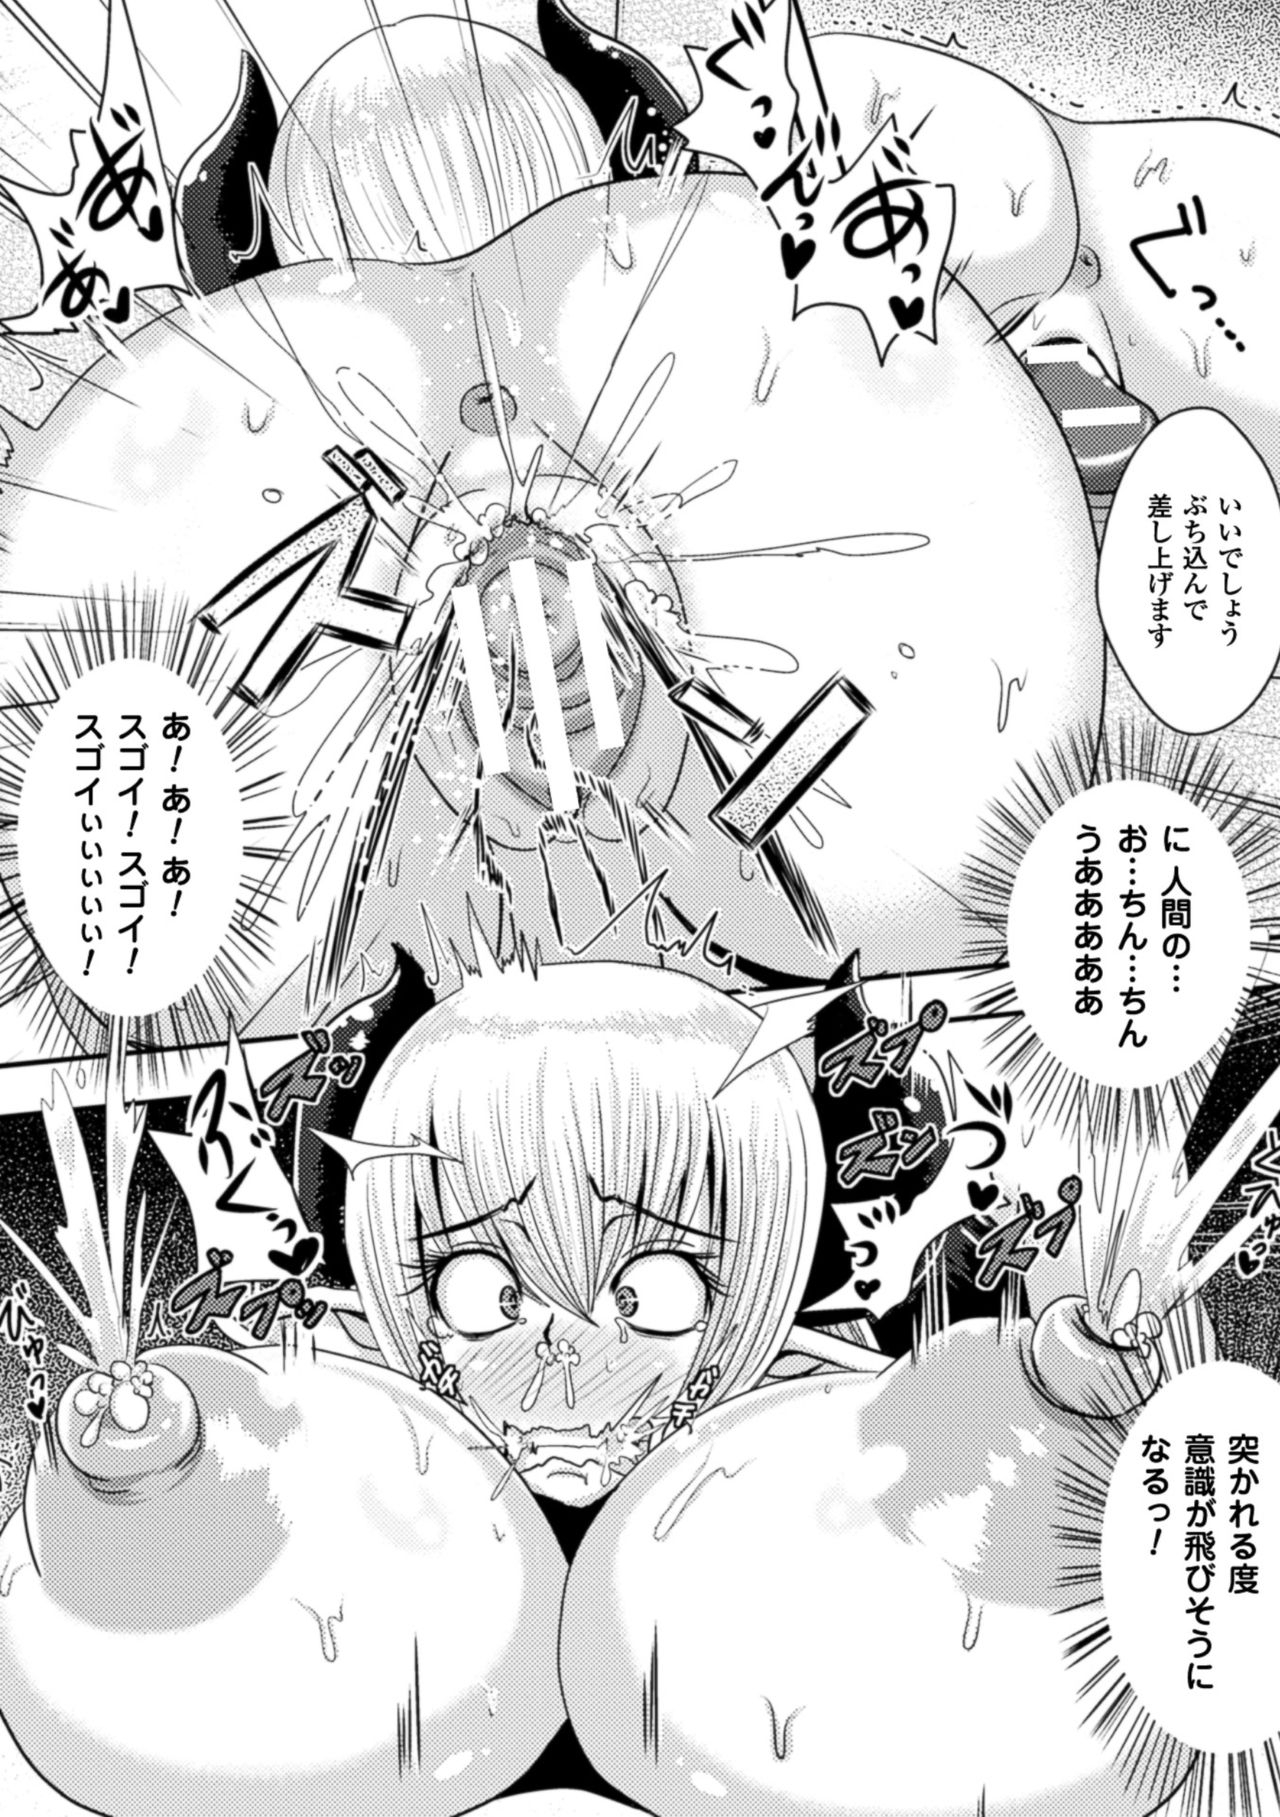 [Akuochisukii Sensei] Akuochisukii Sensei no Heroine Haiboku no Houteishiki - Equation of Heroine's defeat by Mr. Akuochisukii [Digital] 167